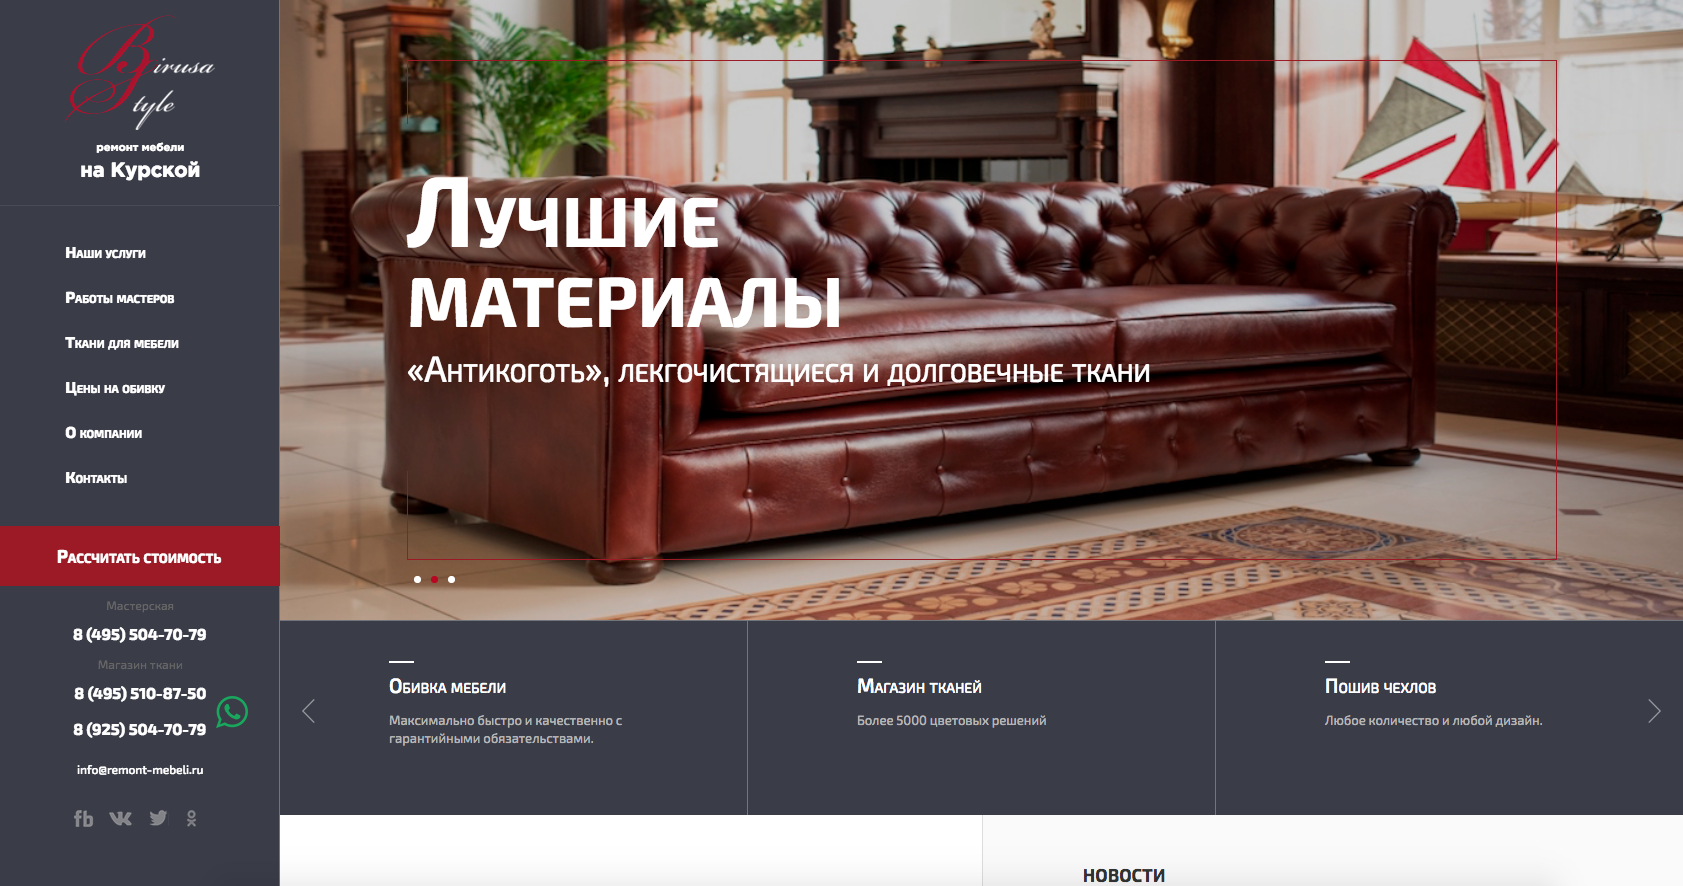 Редизайн сайта по изготовлению и ремонту мебели Birusa Style